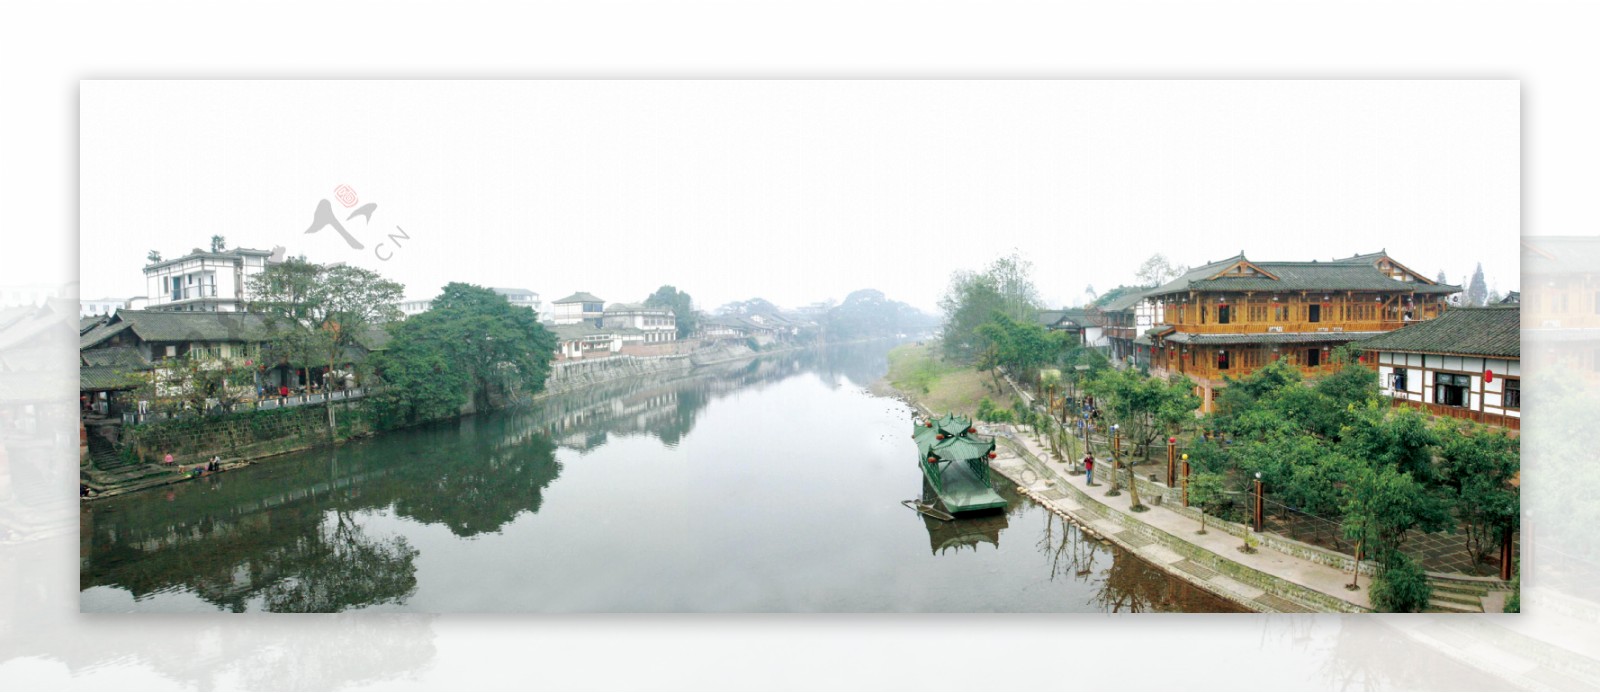 平乐古镇河畔风景图片